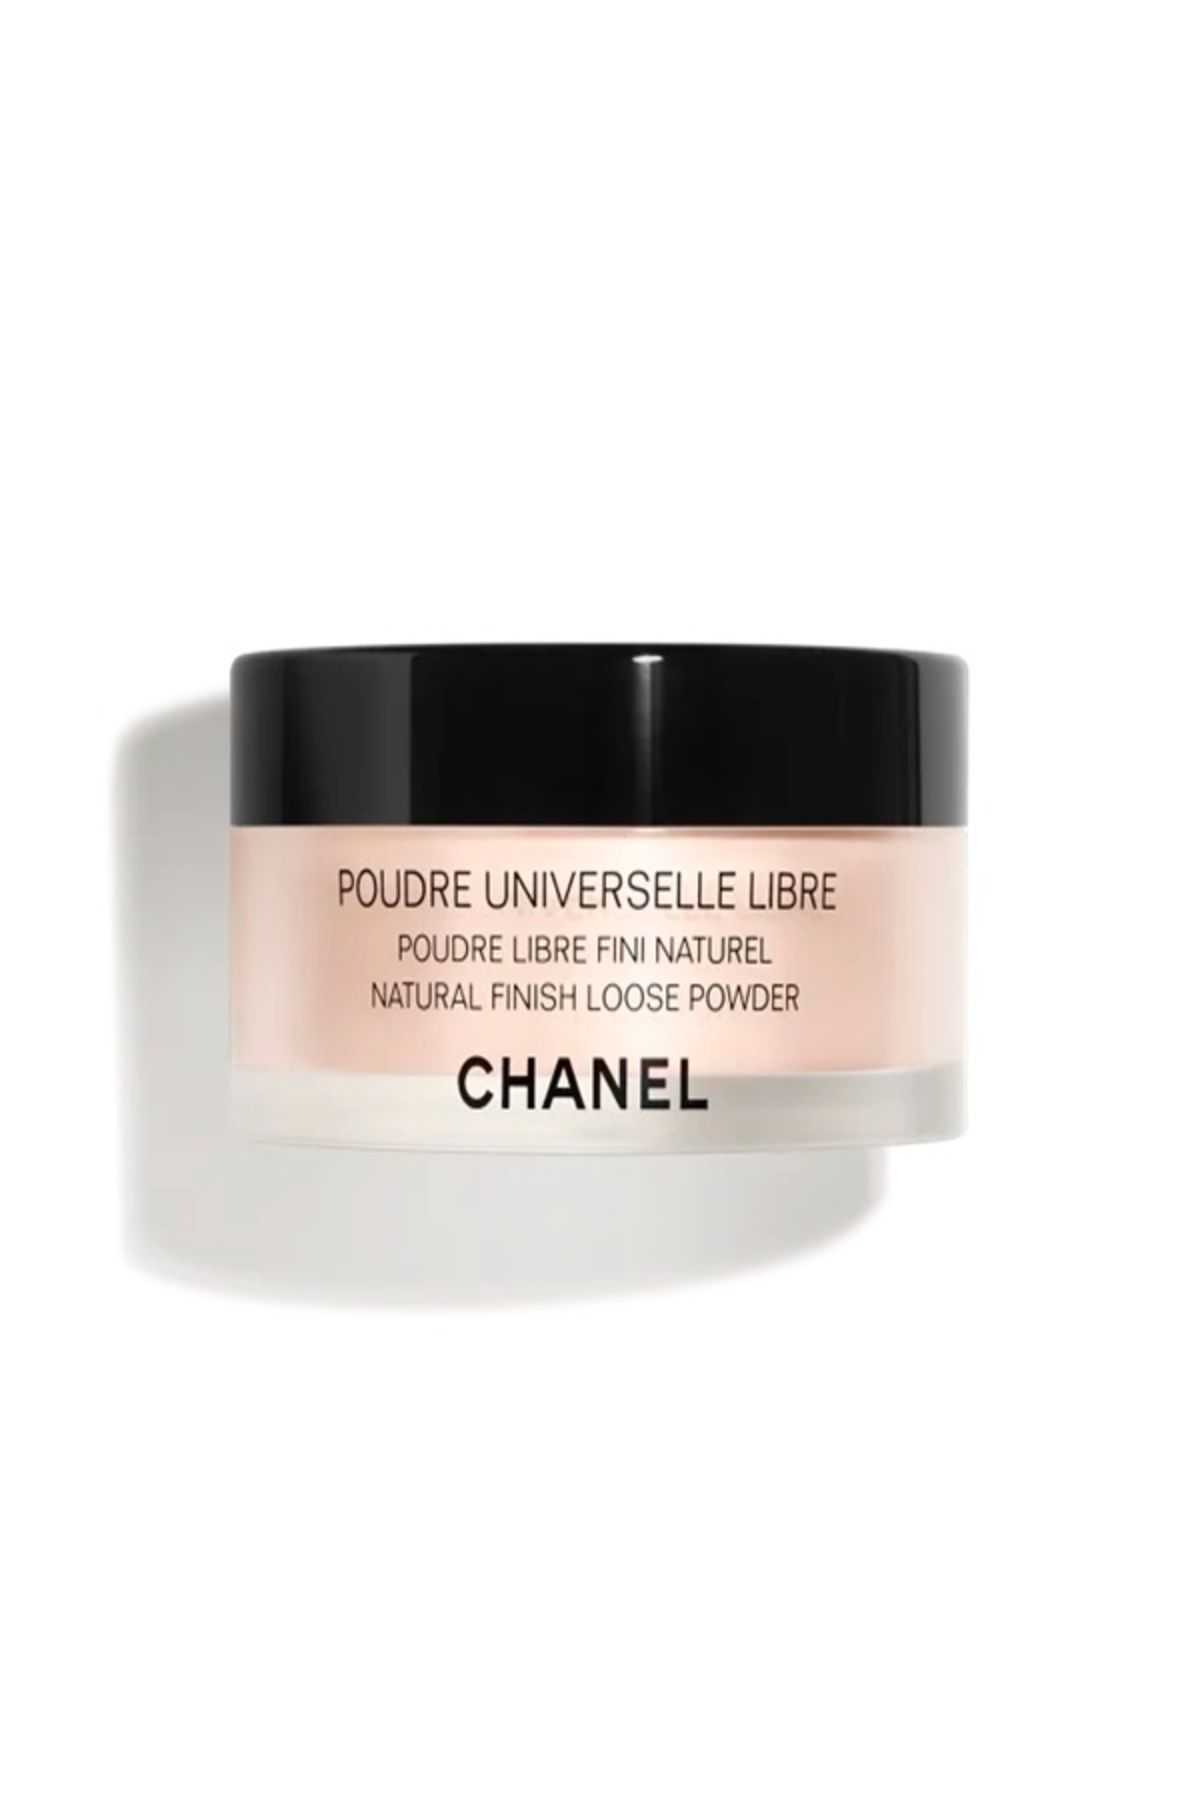 Chanel POUDRE UNIVERSELLE LIBRE-Ultra İnce Yapılı Pürüzsüz Aydınlatıcı Pudra